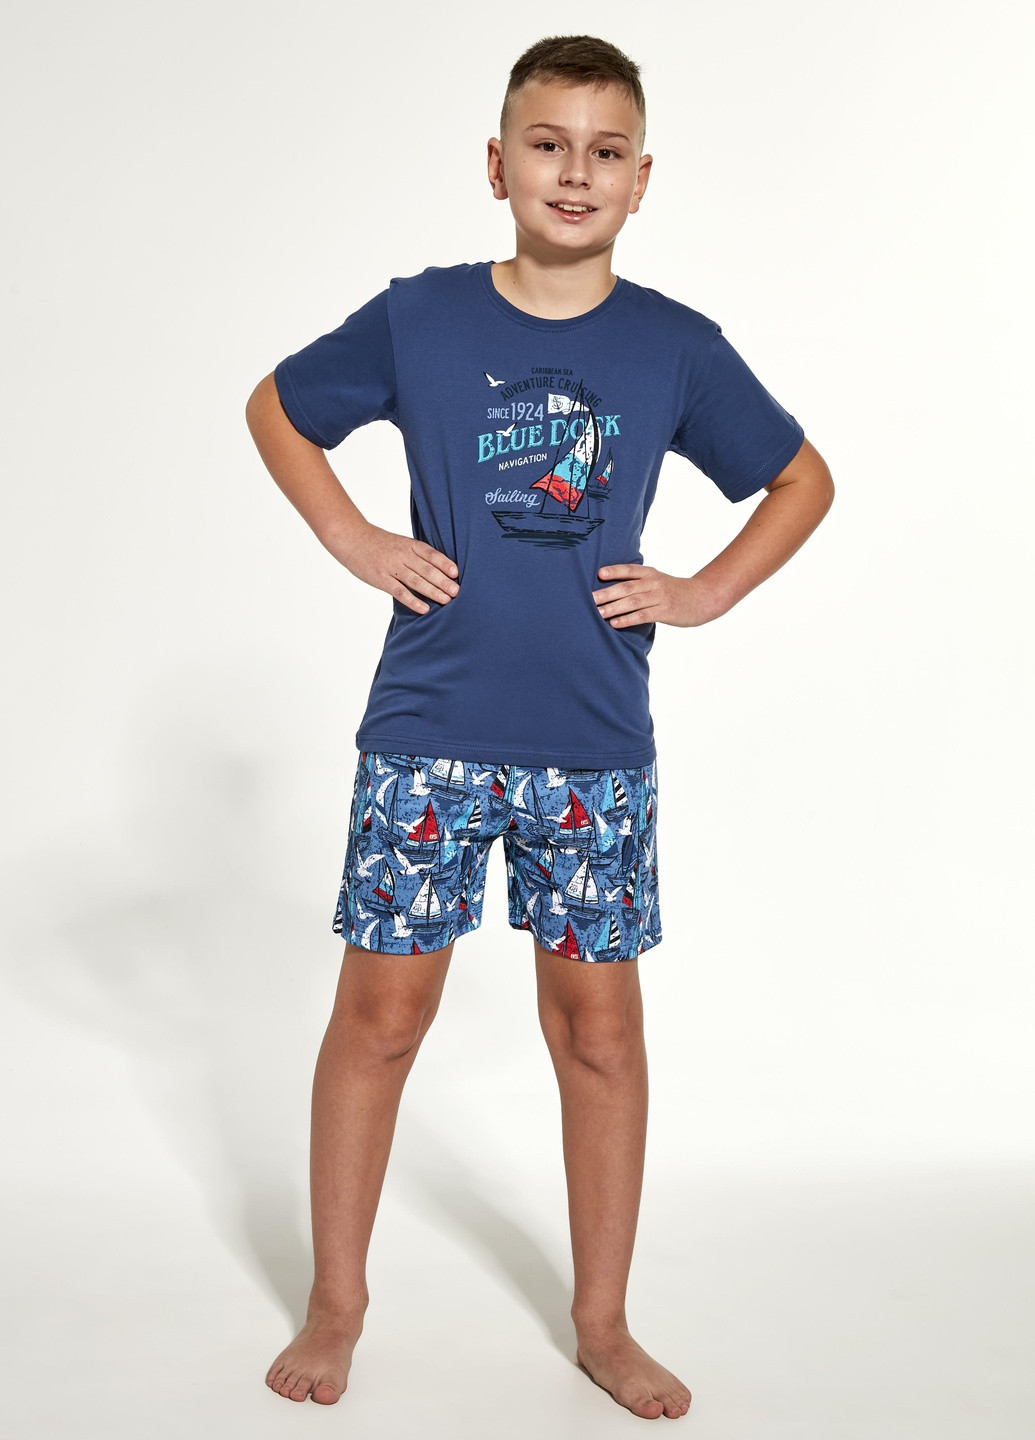 Синя всесезон піжама для хлопчиків-підлітків 96 blue dock 790-21 футболка + шорти Cornette